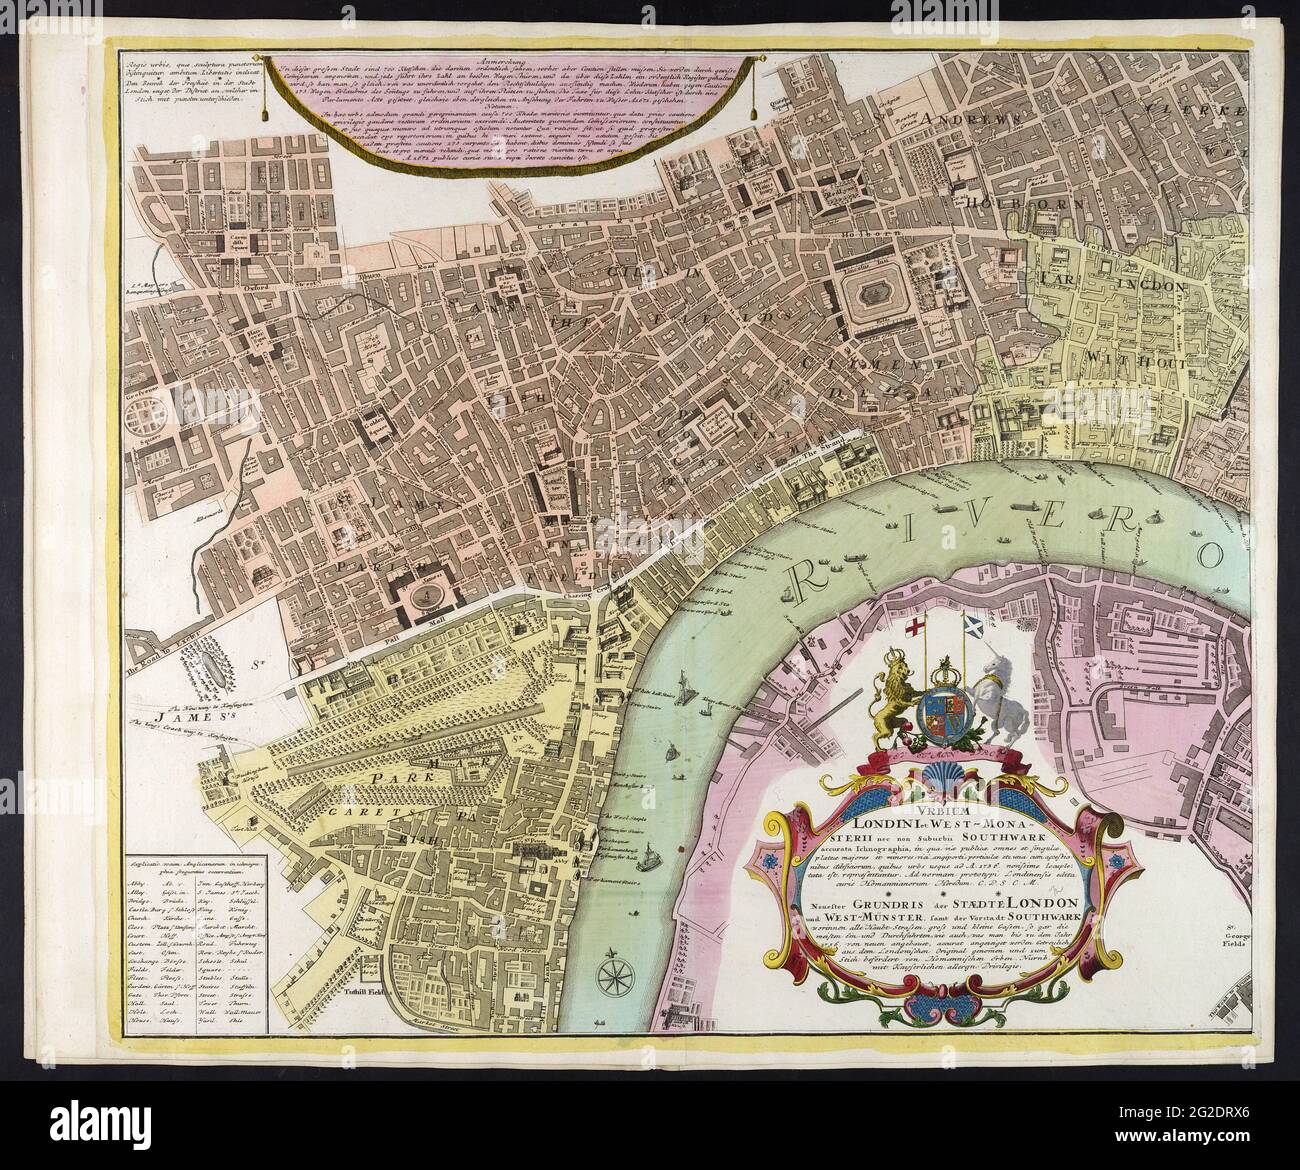 London Map, Map of London, Old Map of London, Vintage London Map, London Print, Retro London Map, Old Maps, London Map Print, Old United Kingdom Map Stock Photo